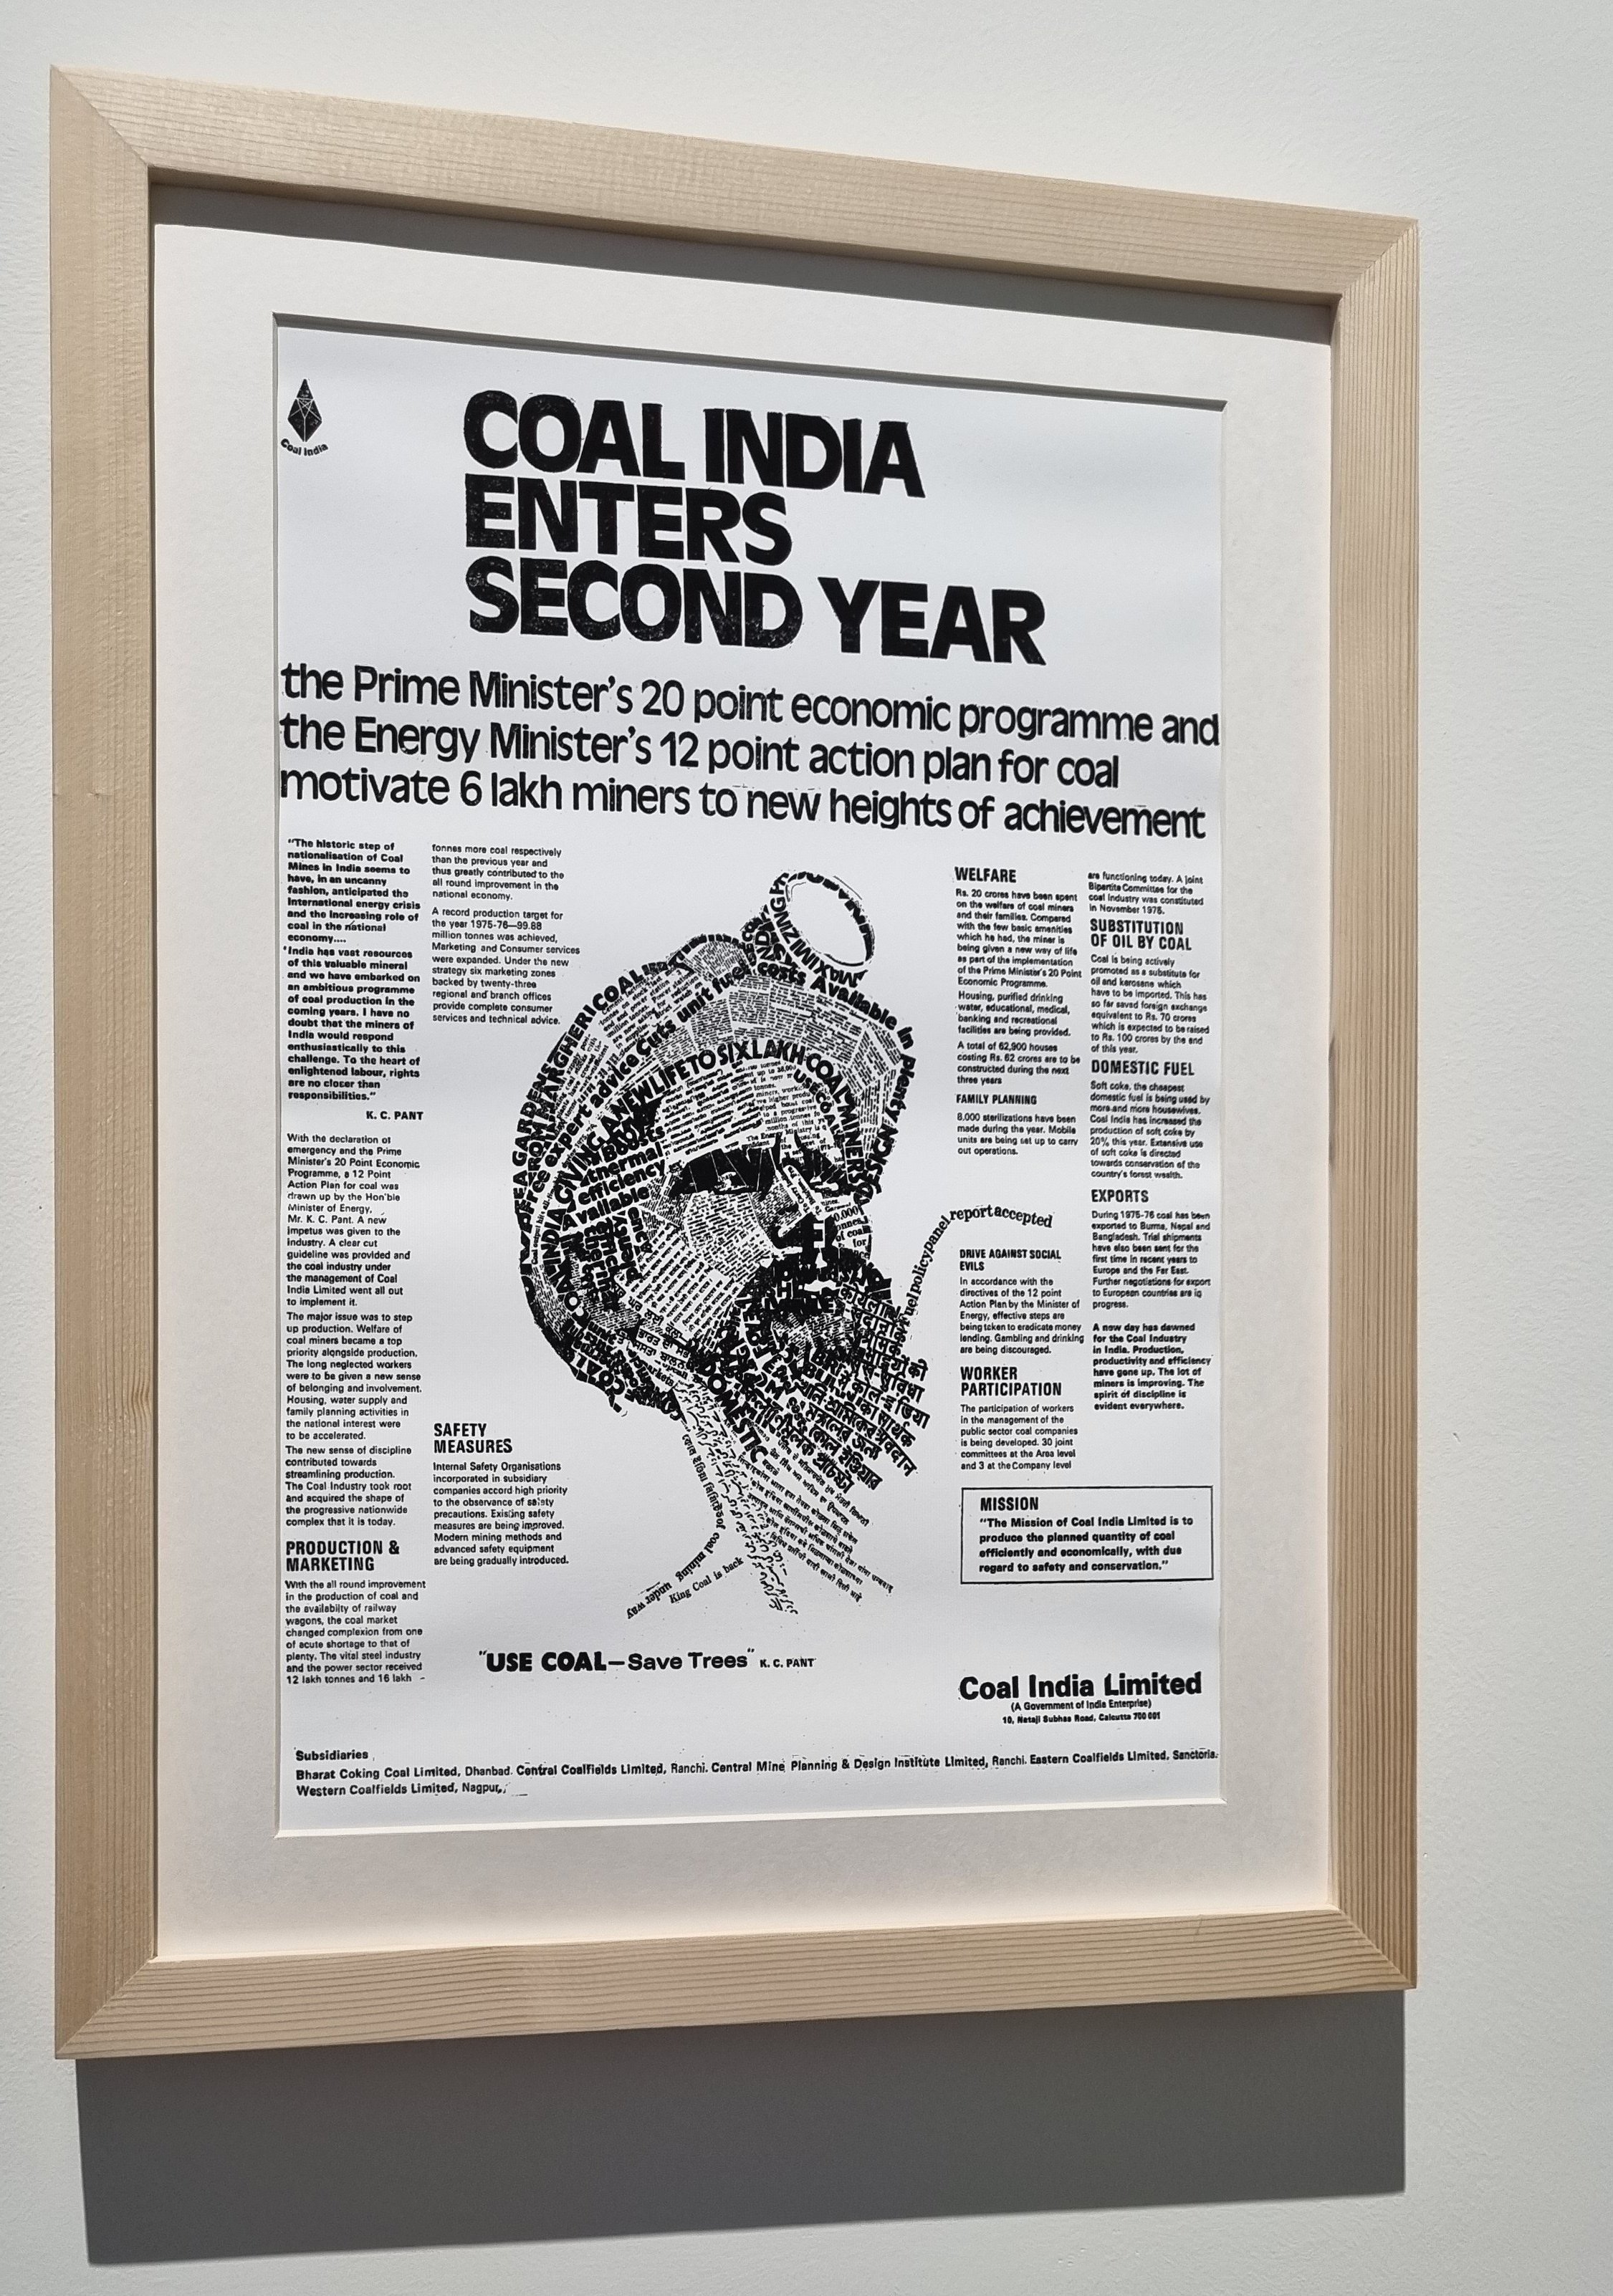 یک تبلیغ دهه 1970 برای زغال سنگ در هند که از استفاده از زغال سنگ حمایت می کند.  عکس ها: Sindhu M